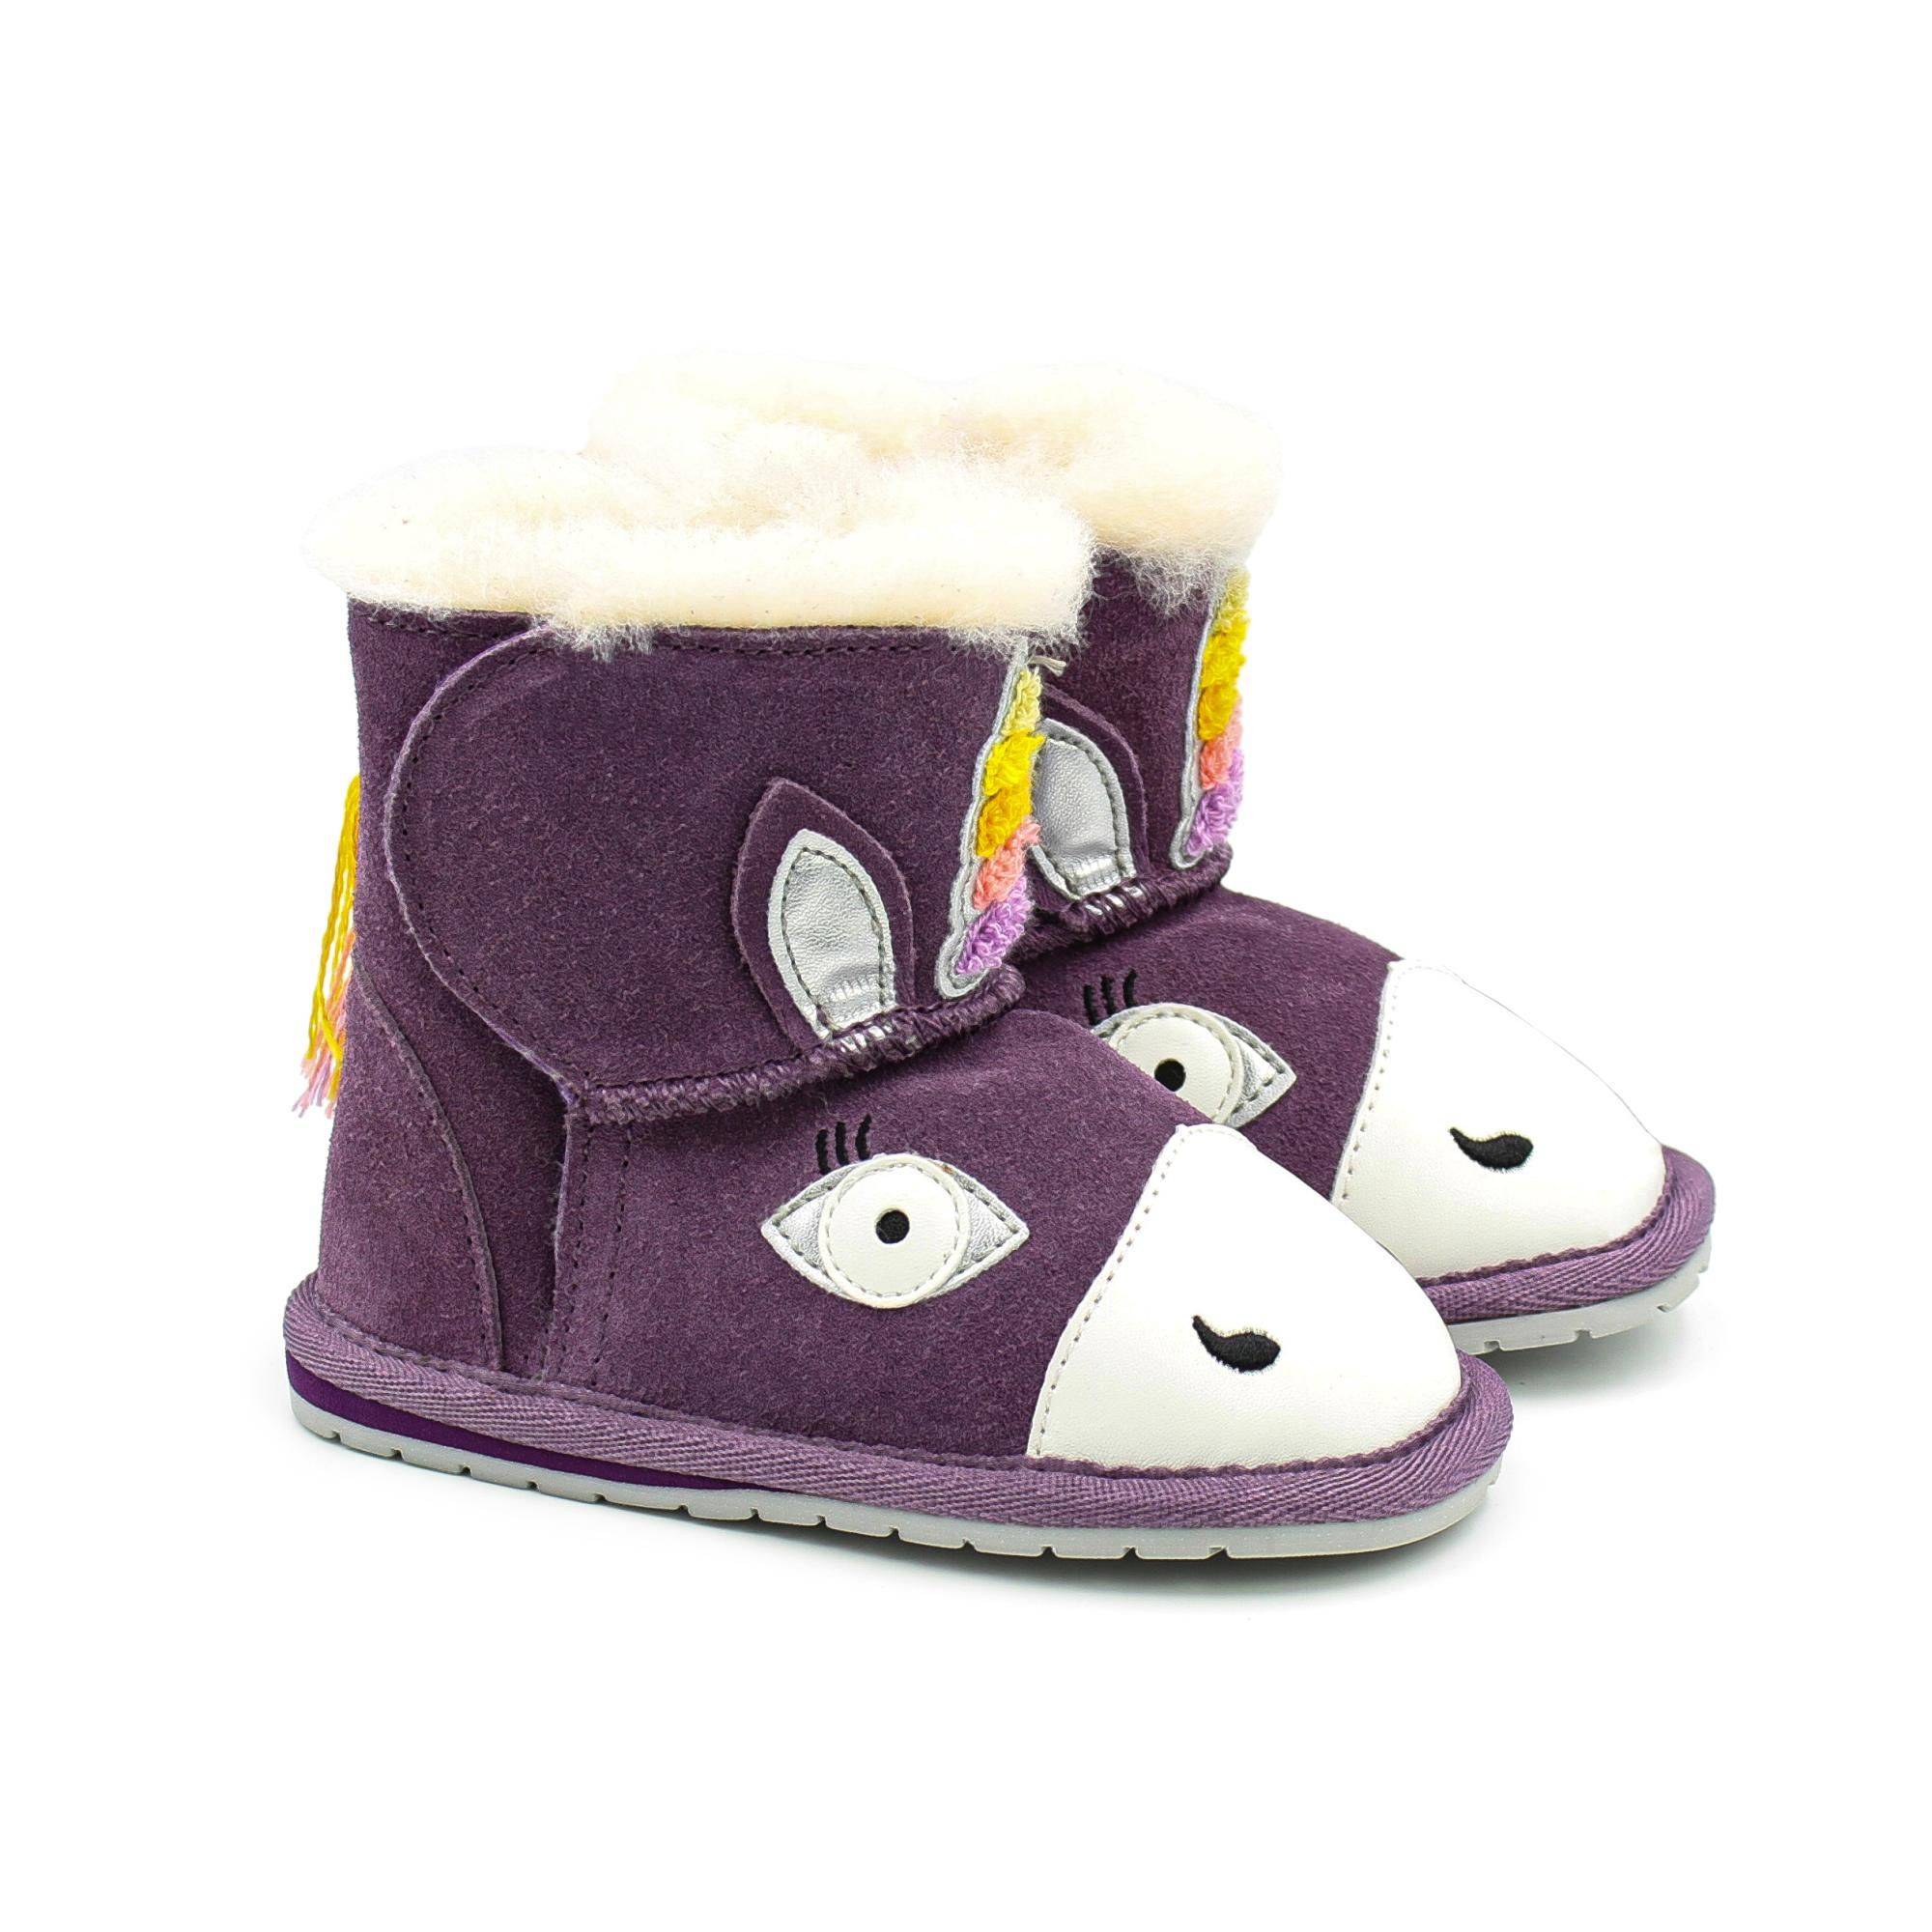 Детские ботинки из овчины (угги) EMU Australia(Magical Unicorn Walker B12409), фиолетовые, цвет фиолетовый, размер 22 - фото 1